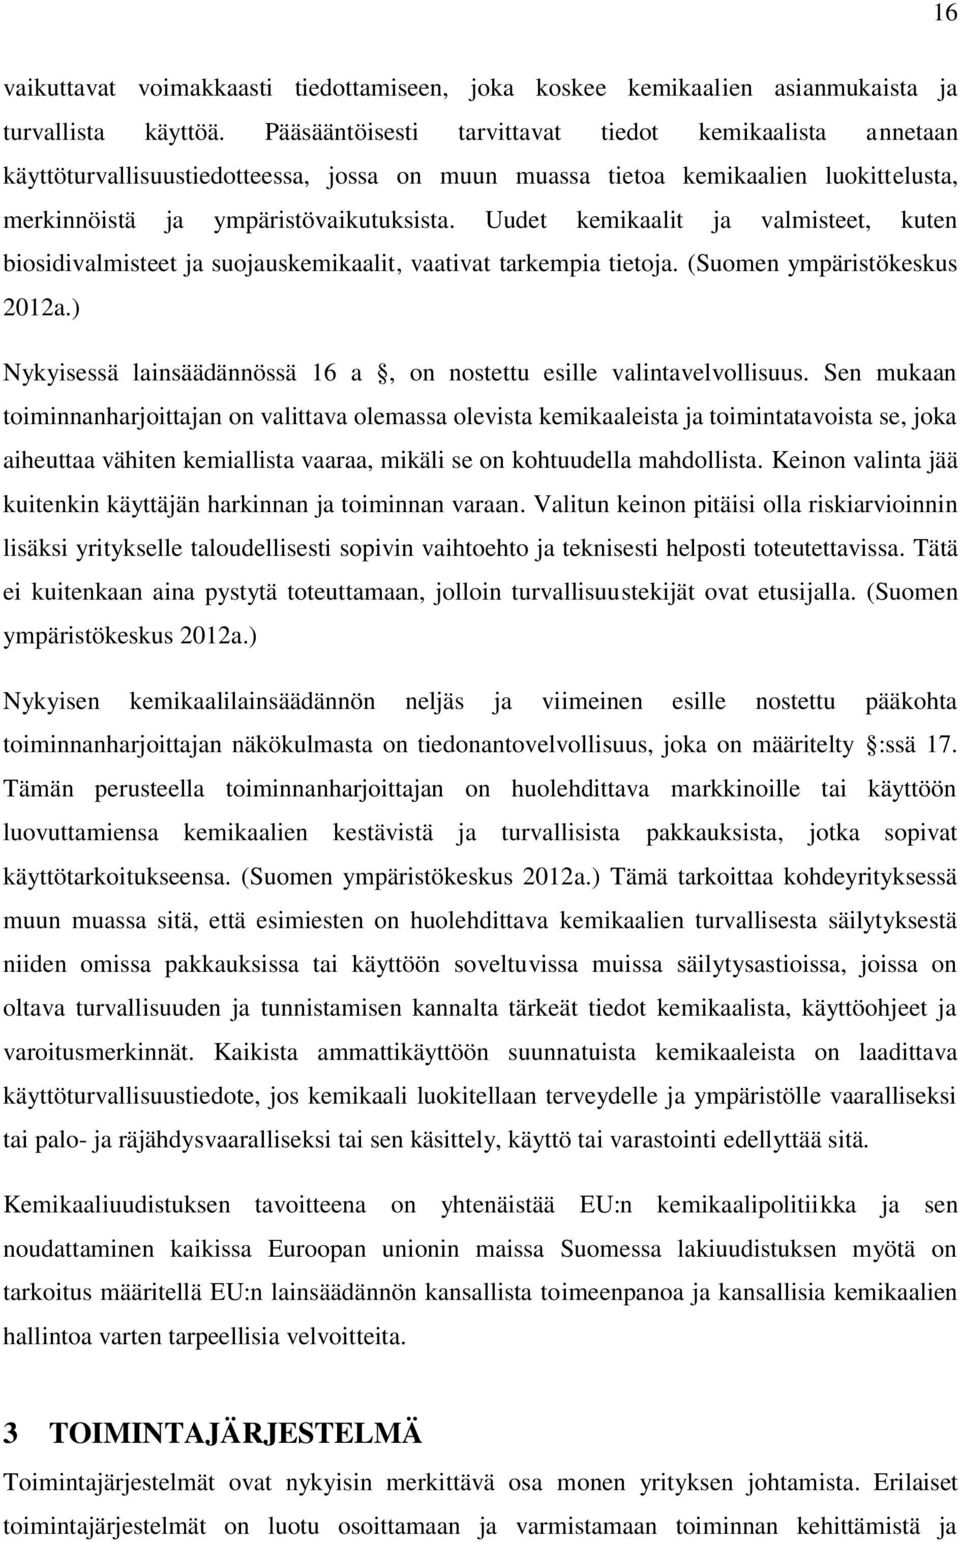 Uudet kemikaalit ja valmisteet, kuten biosidivalmisteet ja suojauskemikaalit, vaativat tarkempia tietoja. (Suomen ympäristökeskus 2012a.